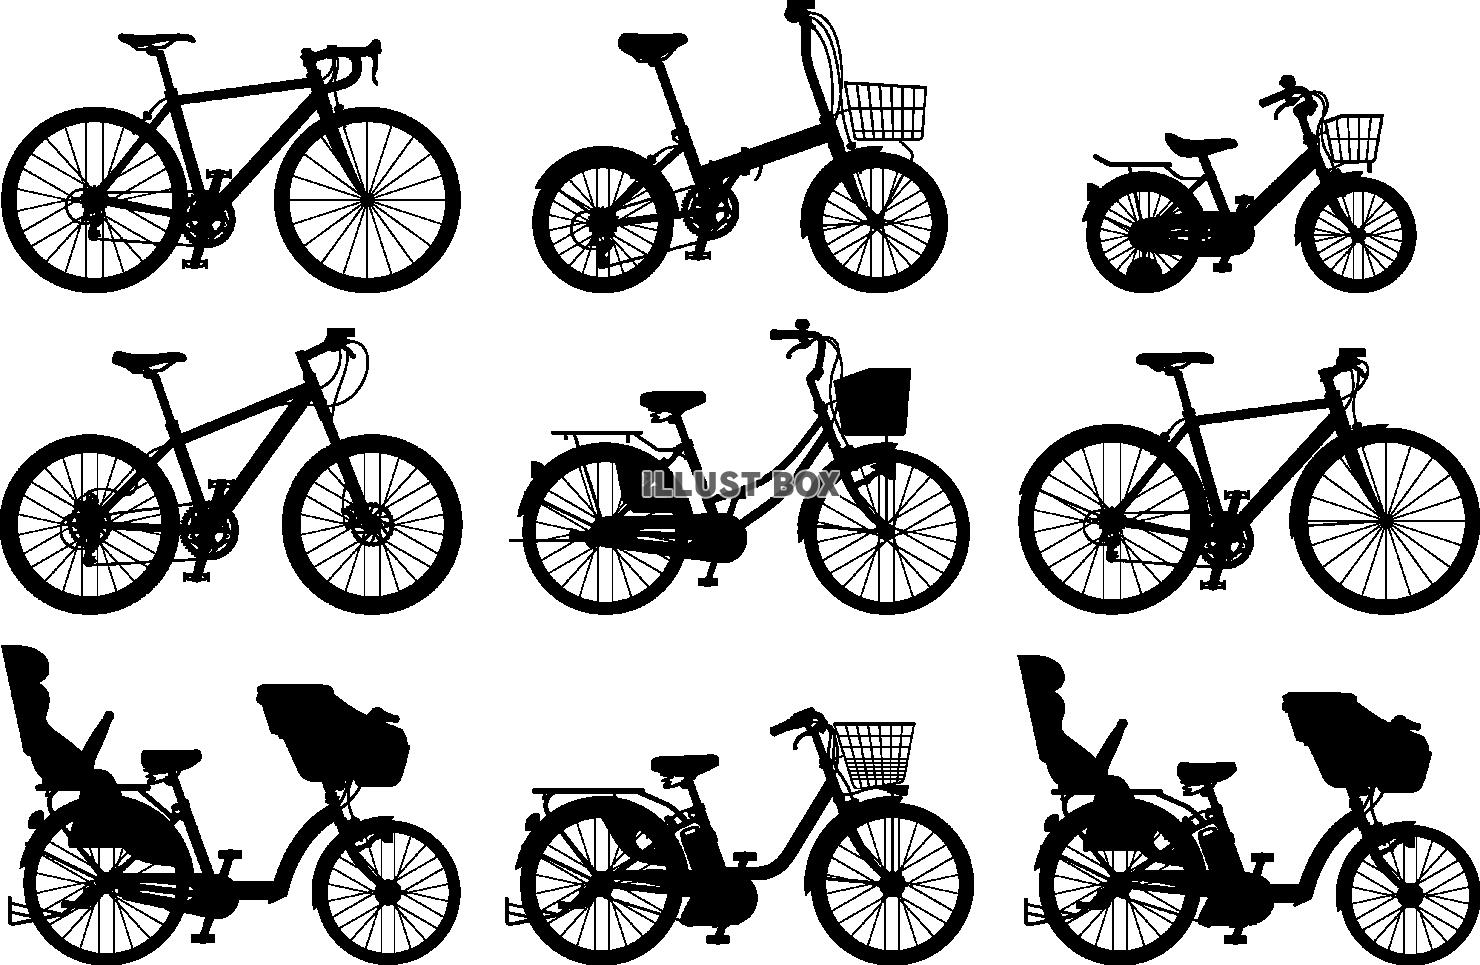 無料イラスト 自転車 サイクル シルエット セット